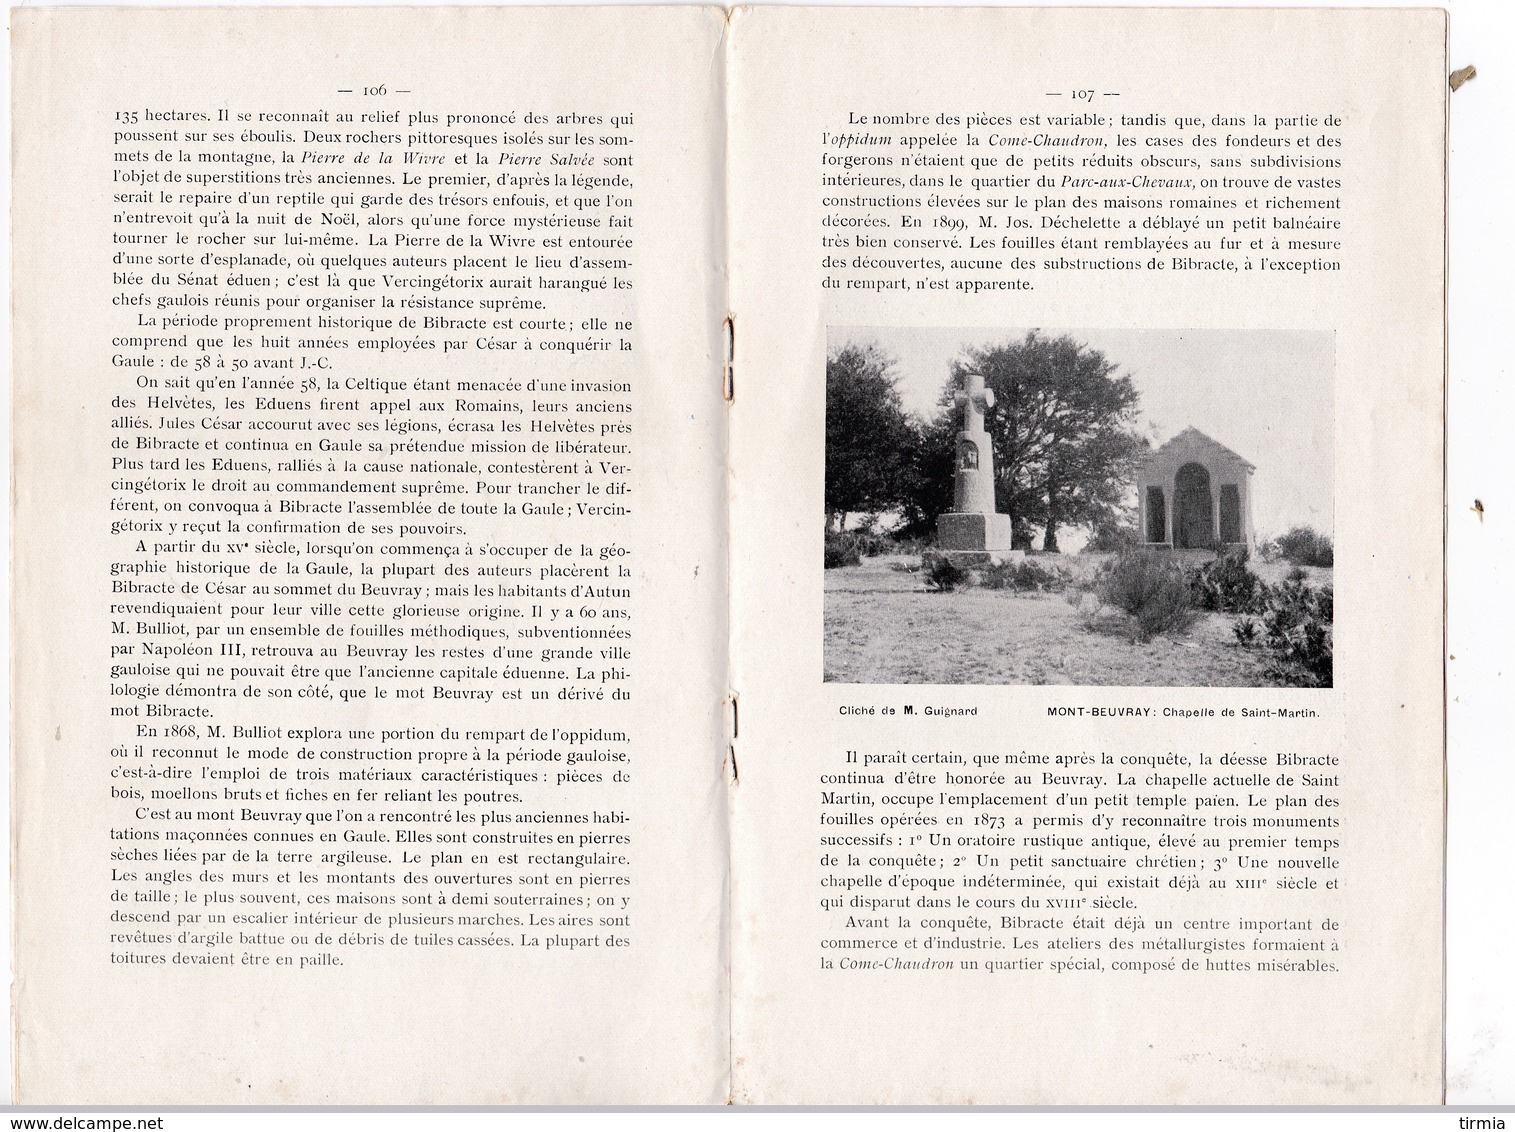 Syndicat General D' Iniciative De La Bourgogne - N°8 -annexe Plan Profil D' Un Itinéraire -  Avril 1907 - Ohne Zuordnung